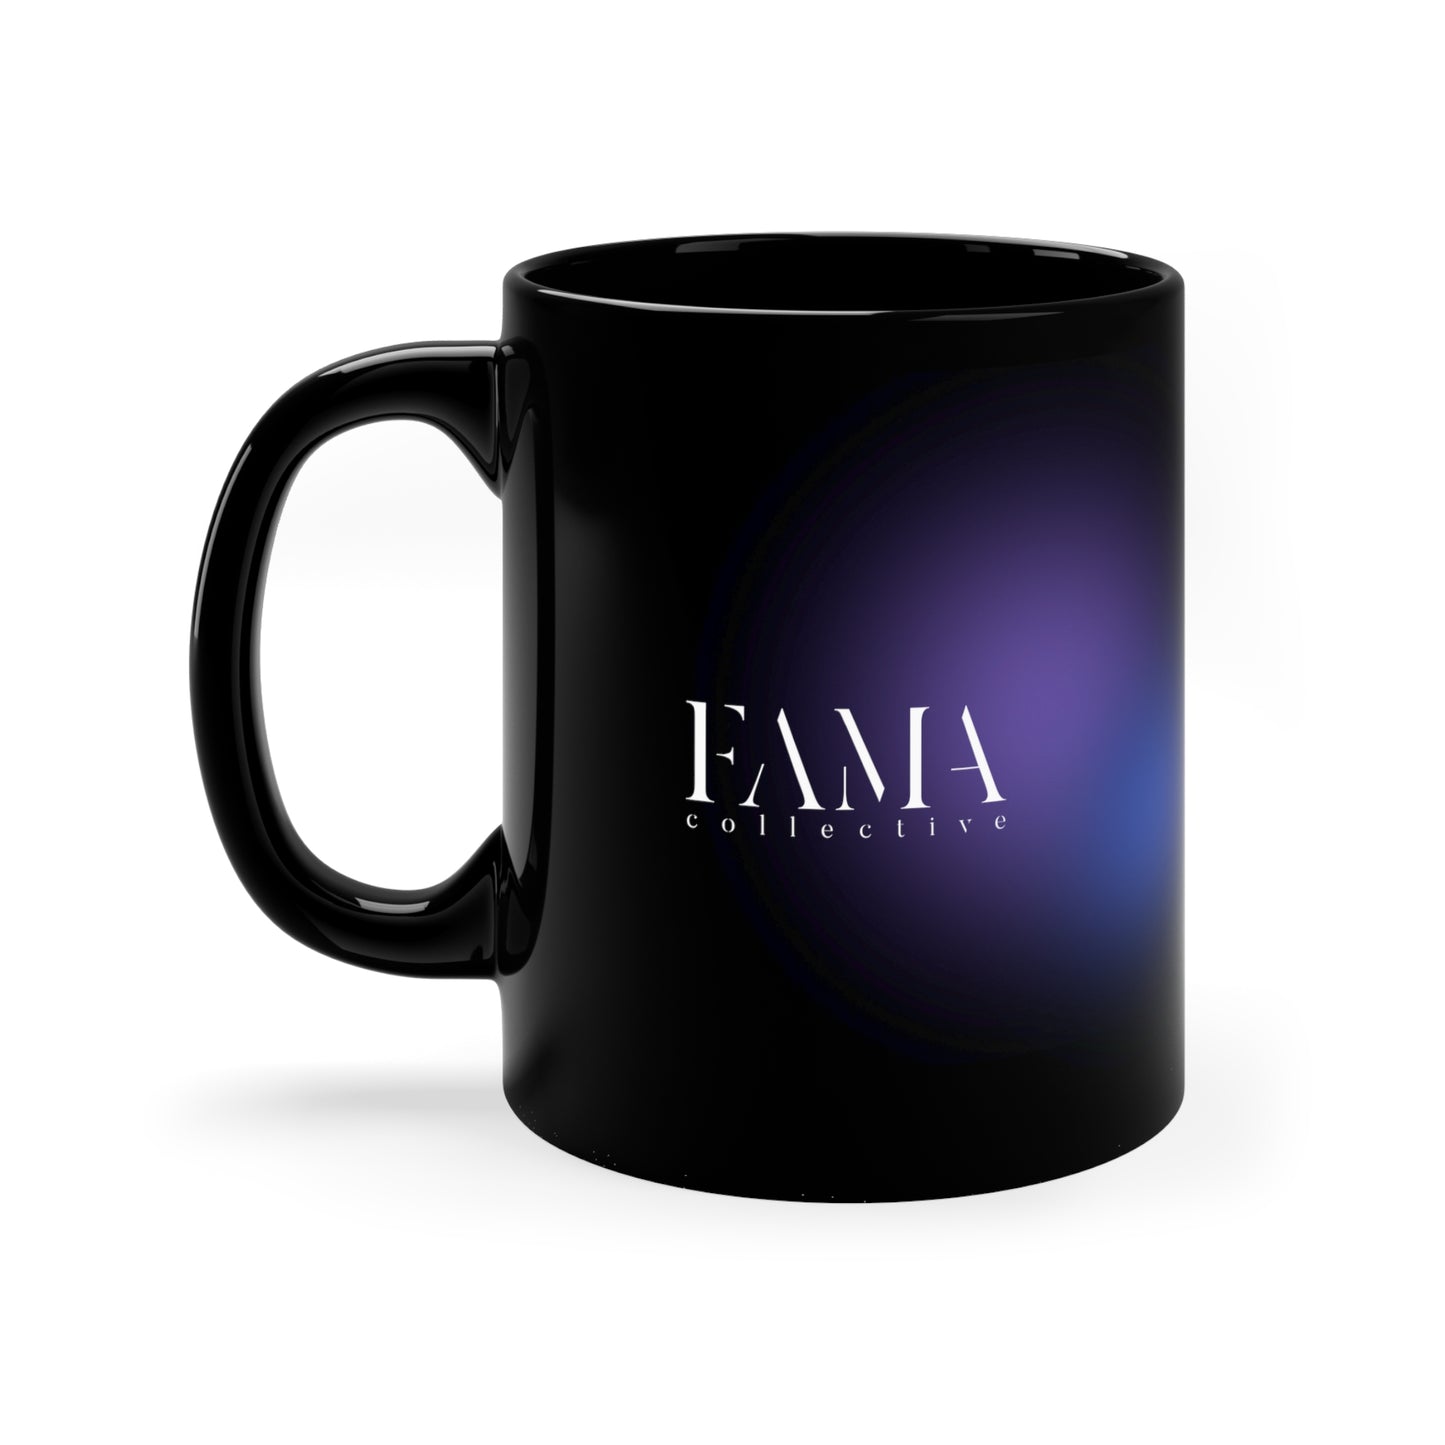 FAMA Collective Black Mug